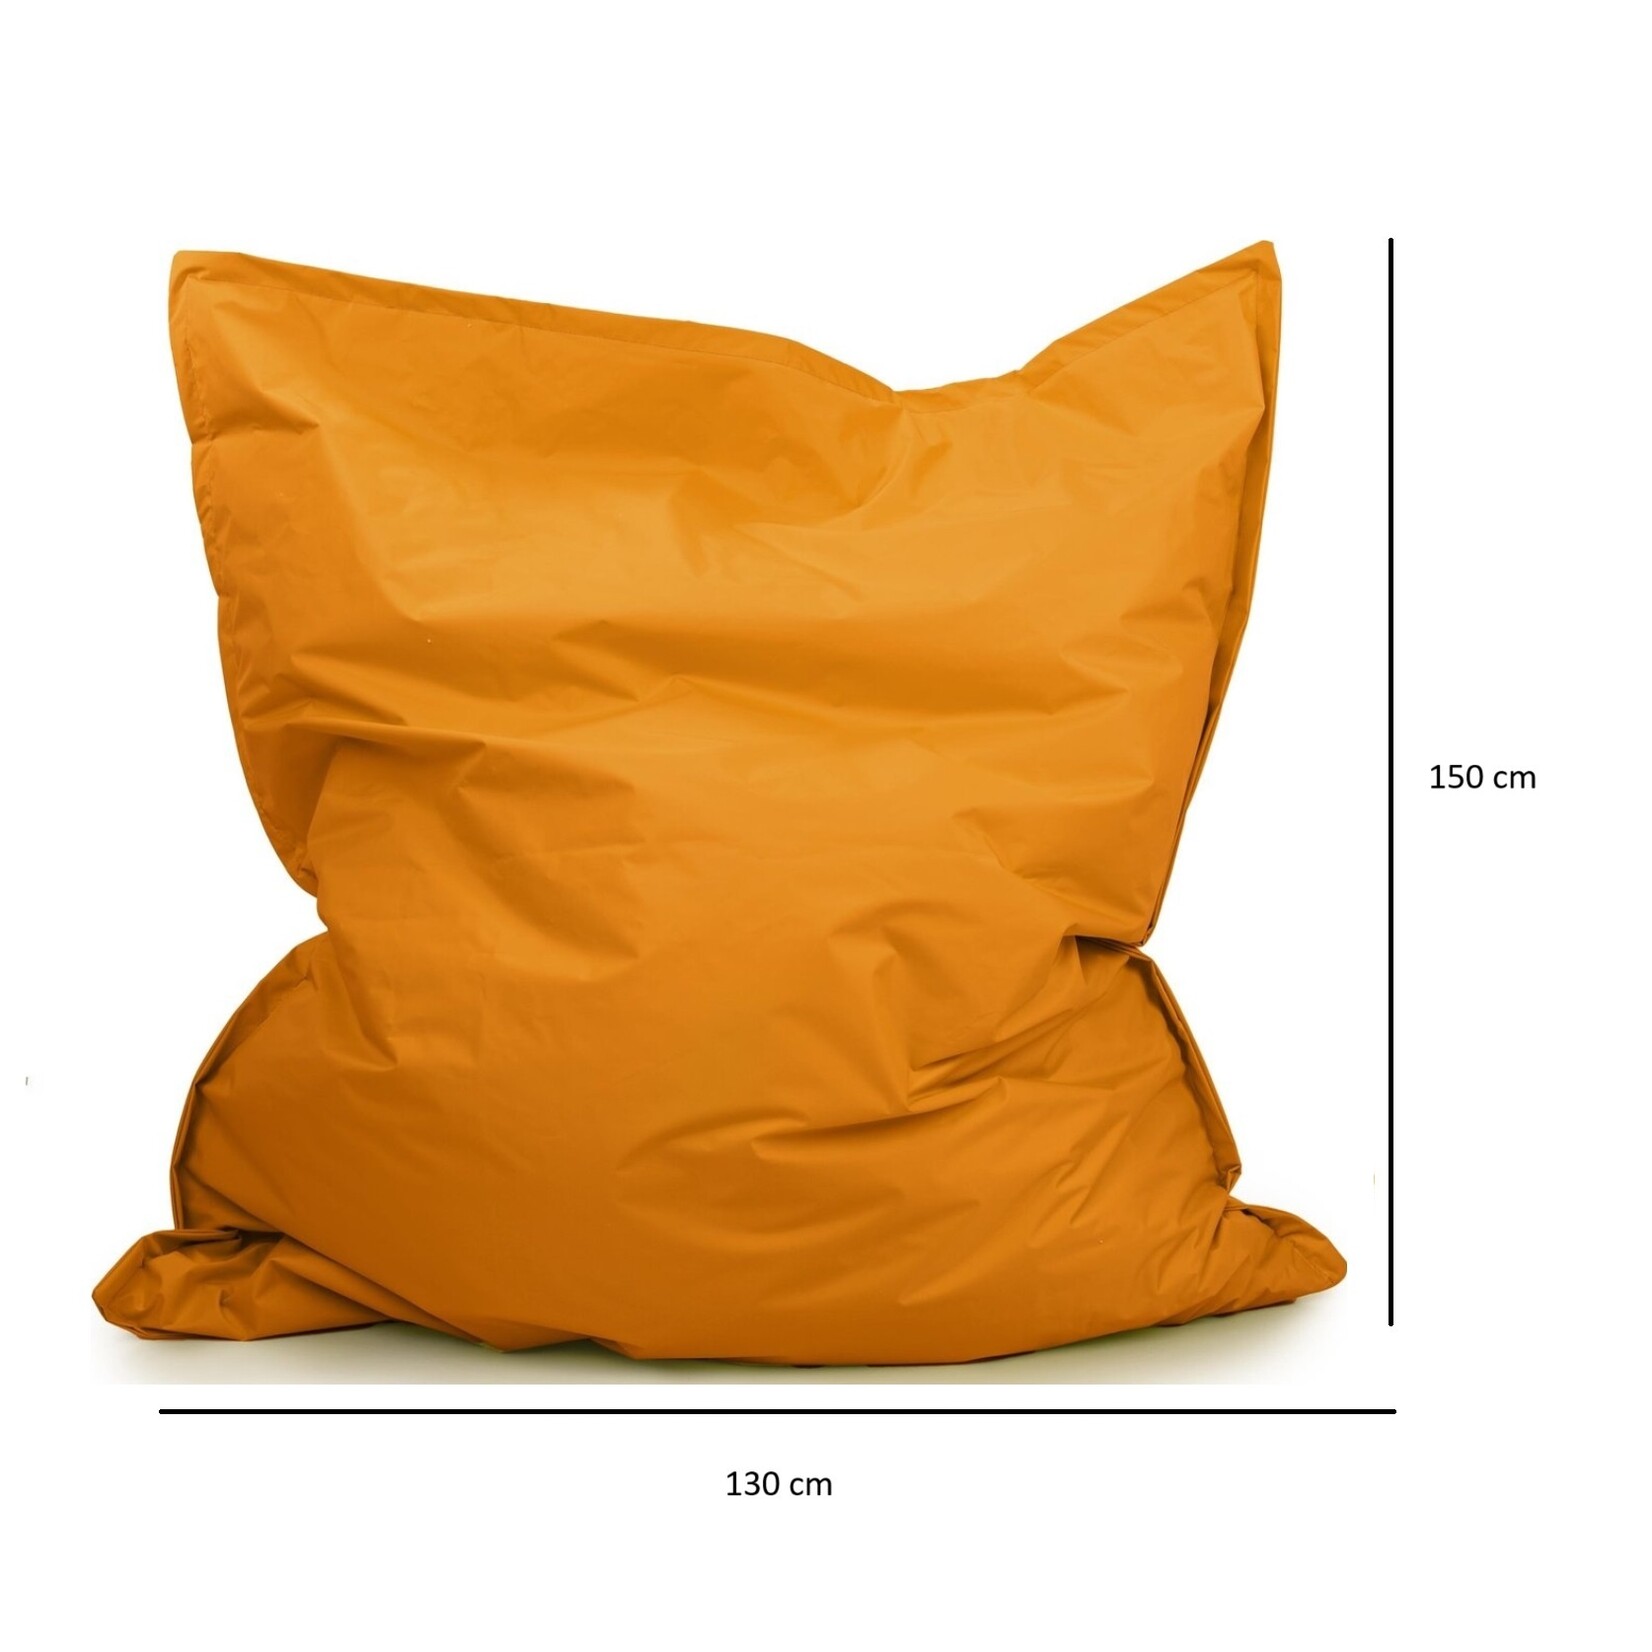 Drop & Sit Beanbag - Orange - 130 x 150 cm - indoor and outdoor